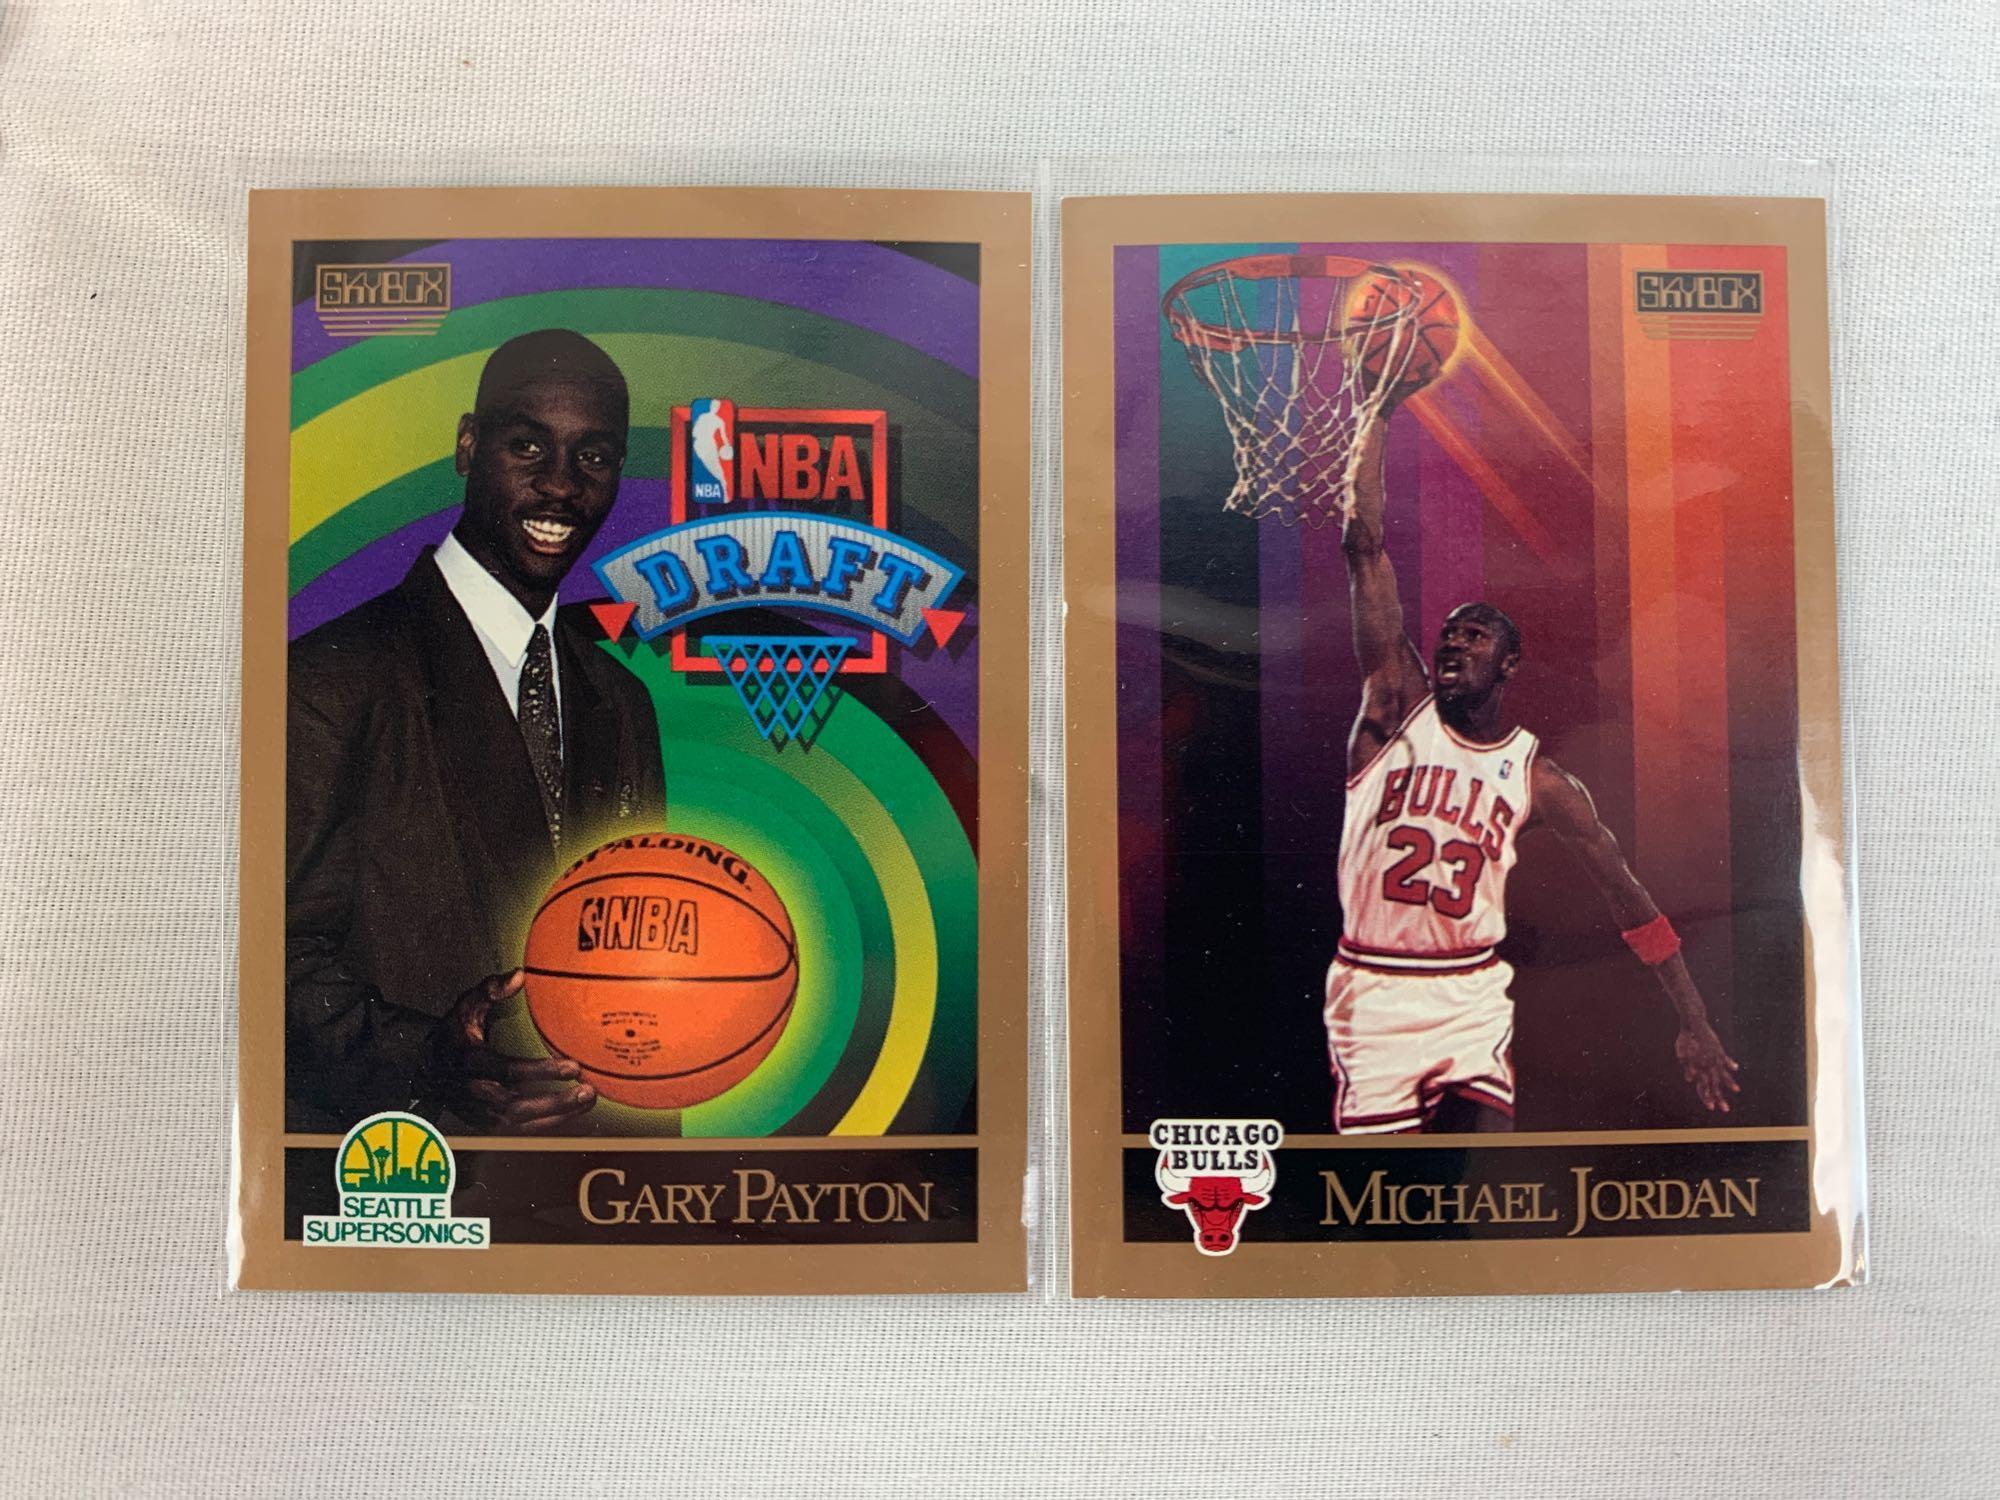 Sky box basketball tins 1990-91 and 1991-92 sets